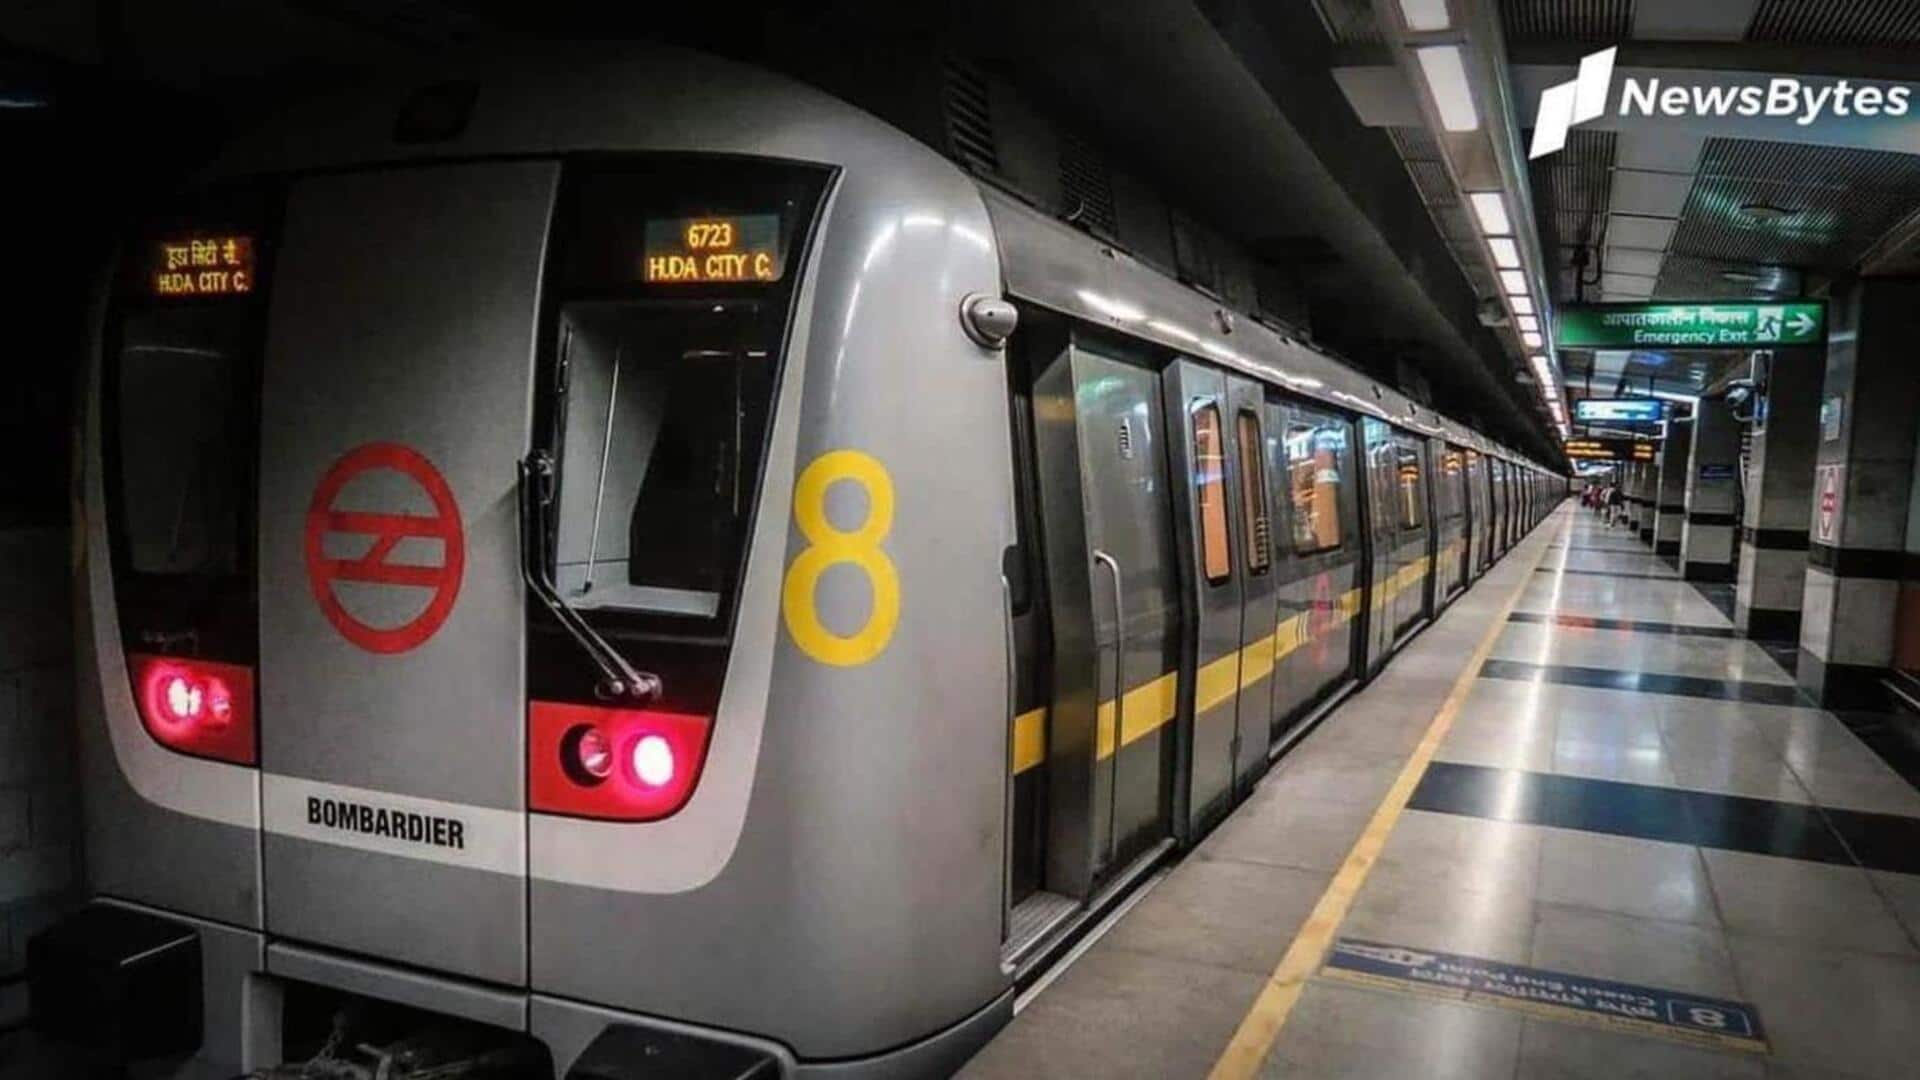 दिल्ली मेट्रो: हुडा सिटी सेंटर स्टेशन का नाम बदलकर मिलेनियम सिटी सेंटर किया गया